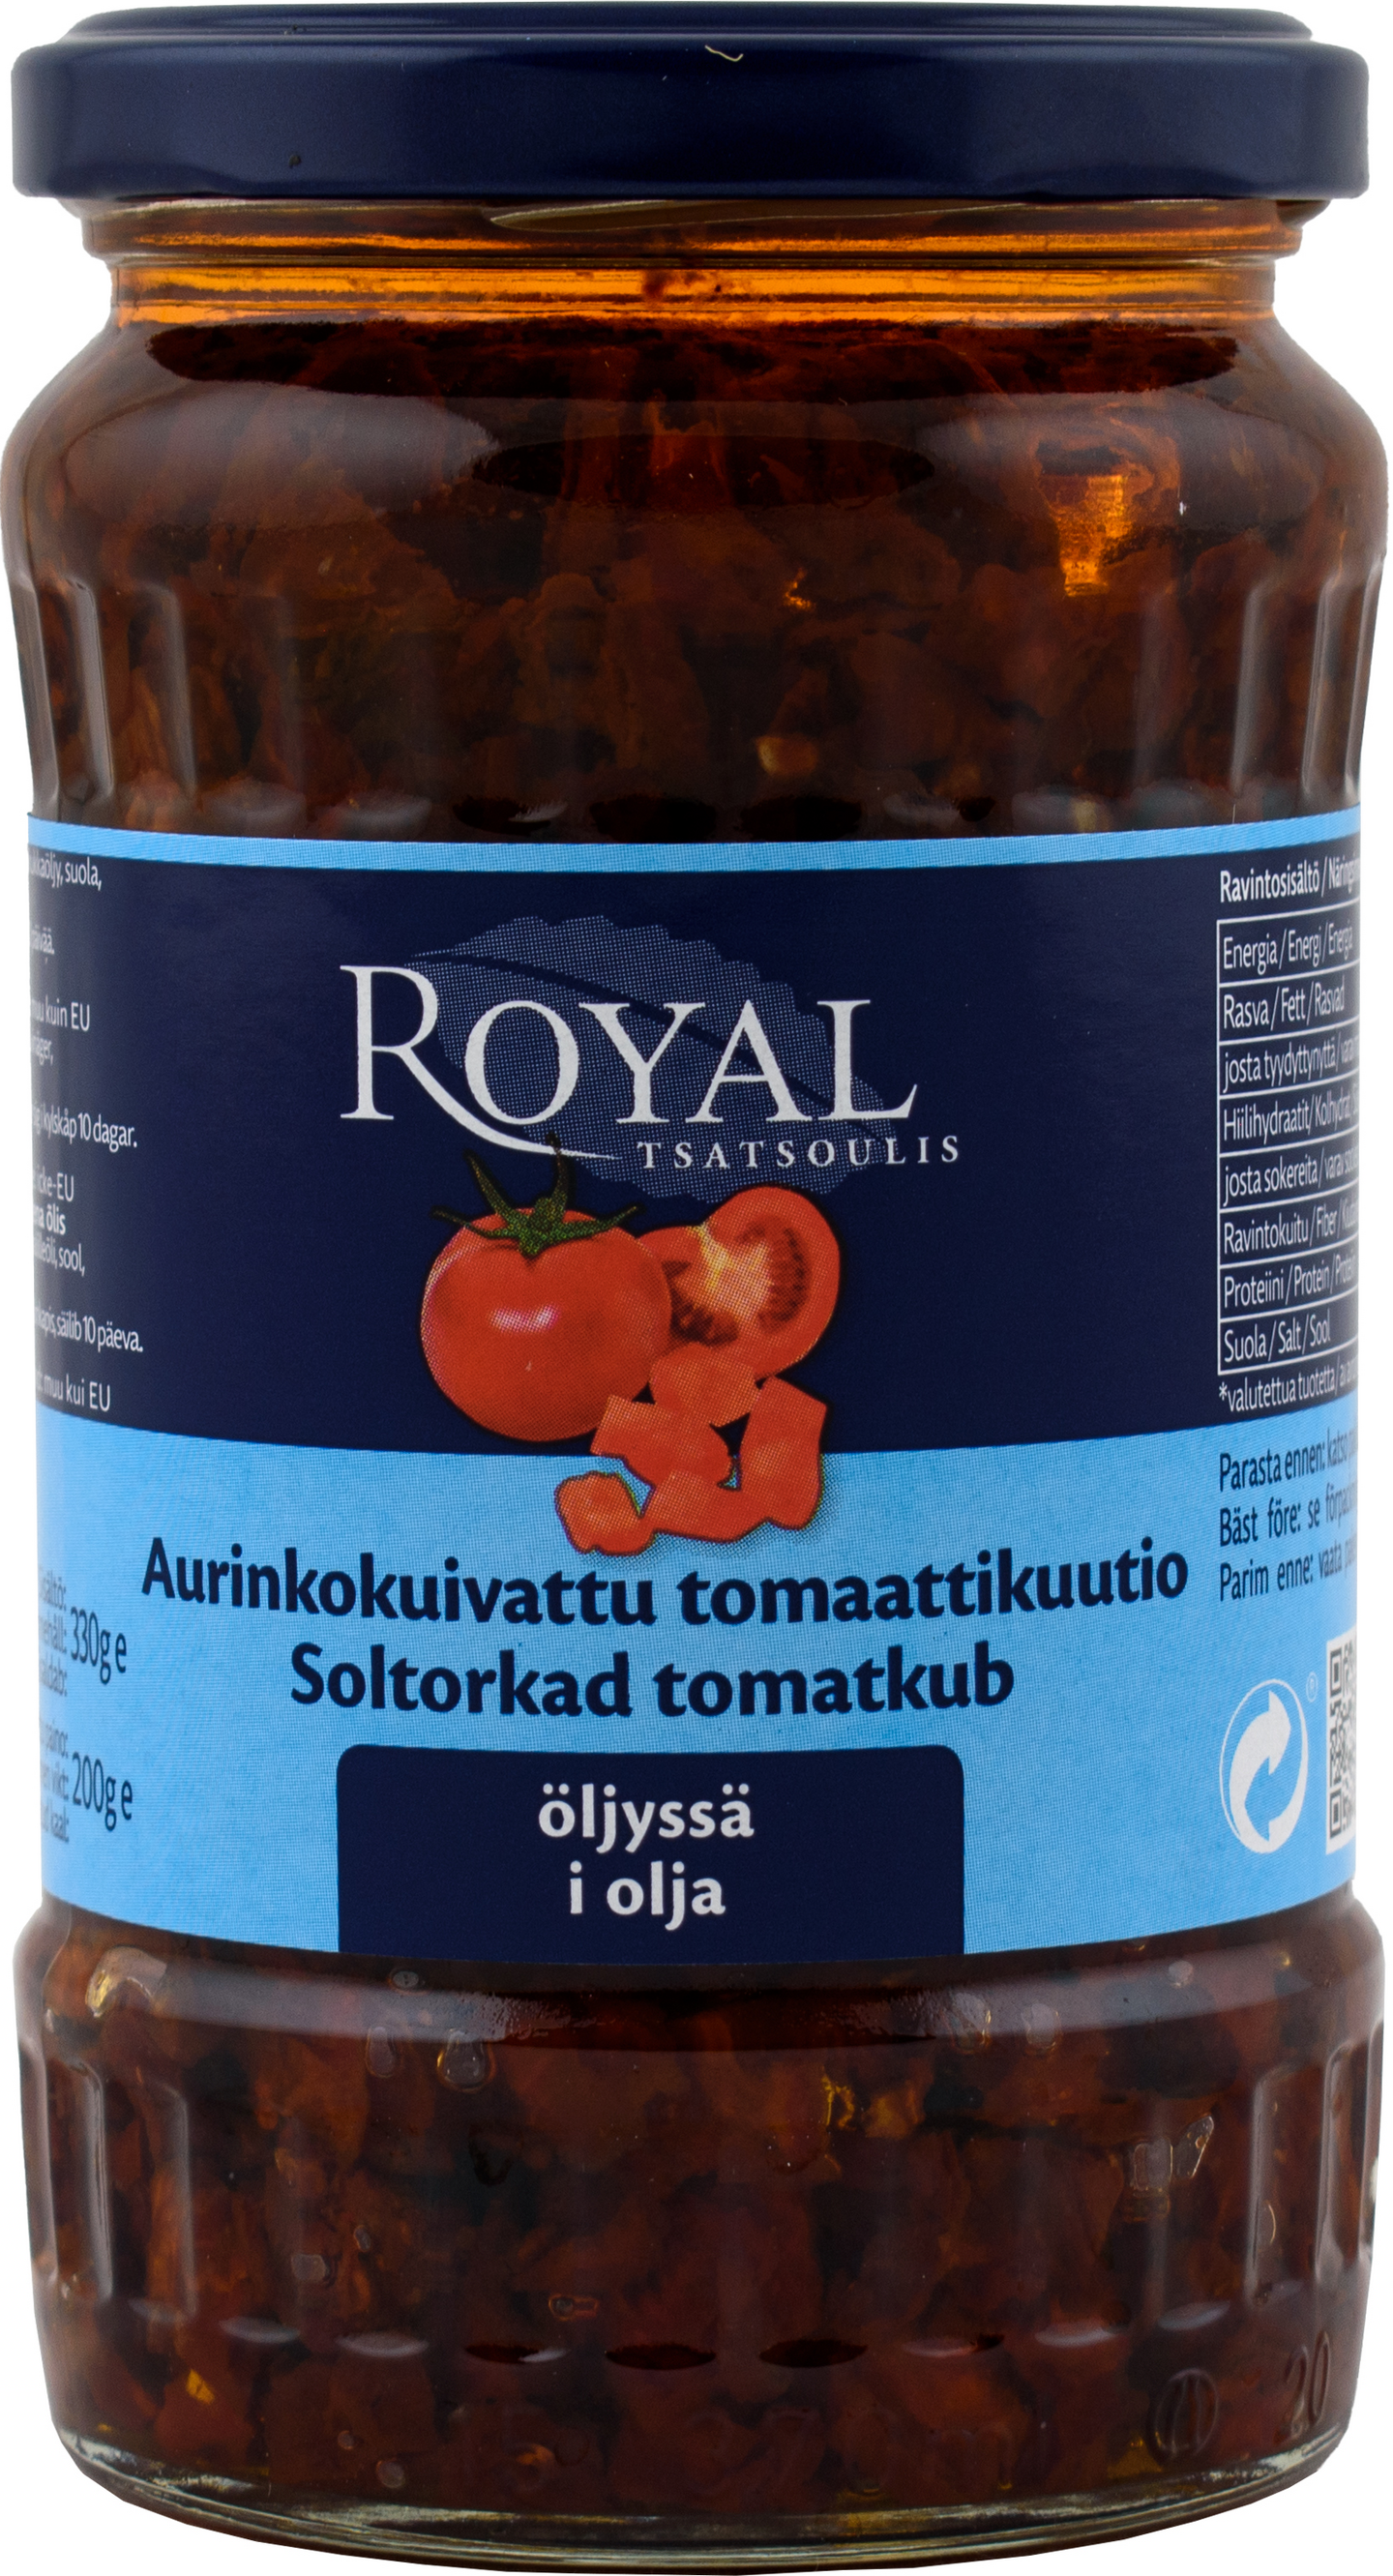 Royal aurinkokuivattu tomaattikuutio öljyssä 330g/200g